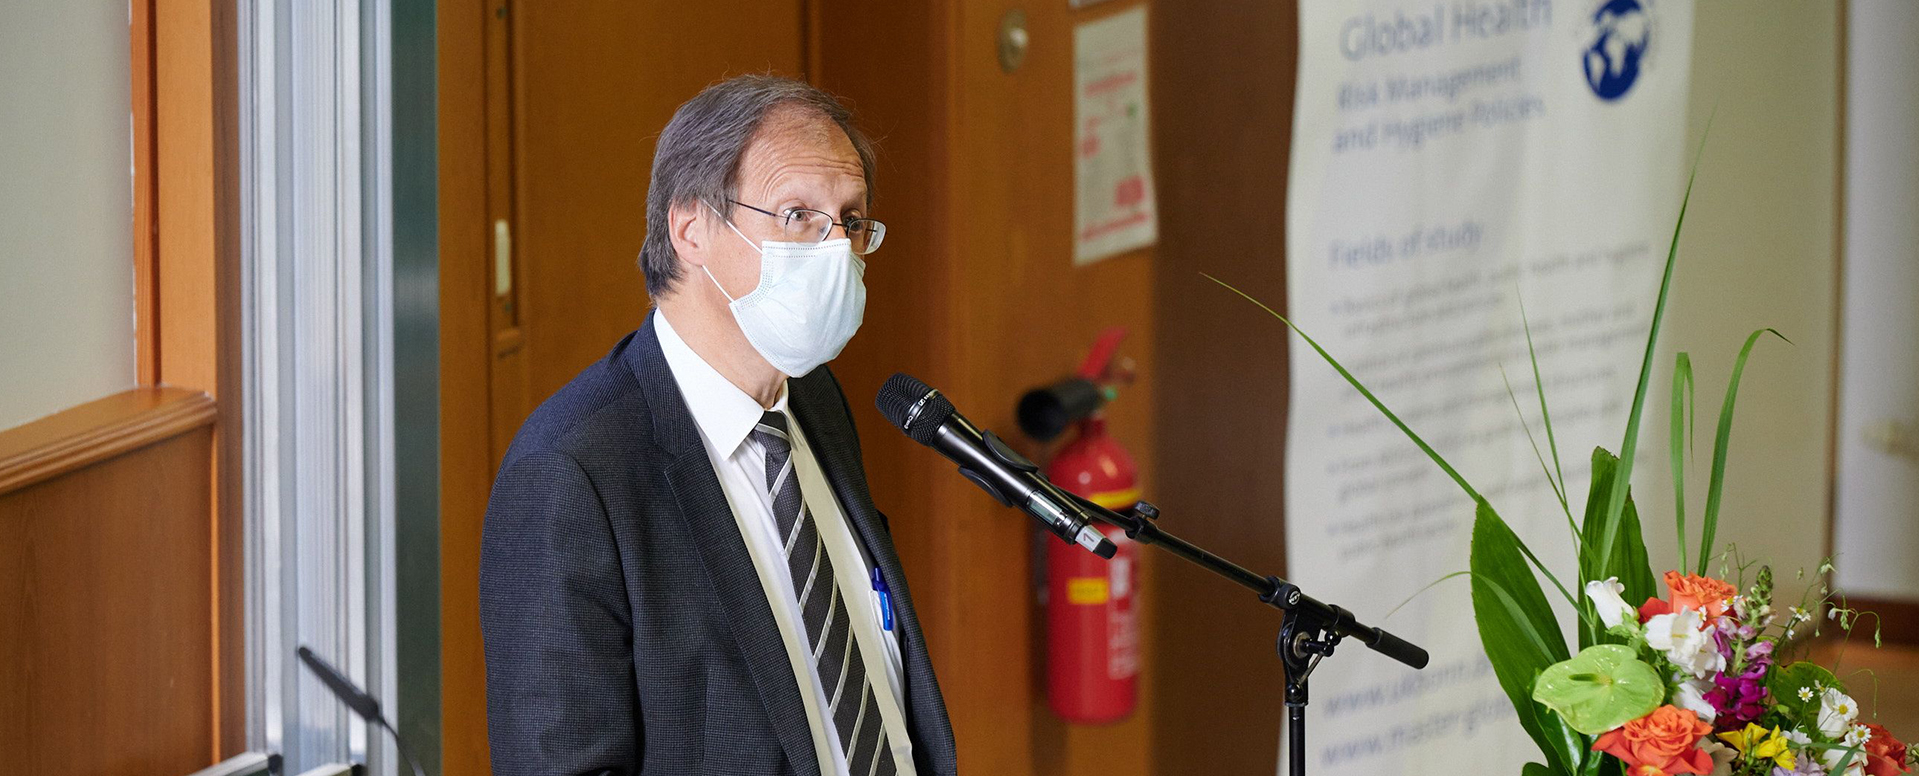 Ärztlicher Direktor und Vorstandsvorsitzender des Universitätsklinikums Bonn (UKB) Prof. Wolfgang Holzgreve begrüßt die zahlreichen Gäste der Veranstaltung „Determinanten der Globalen Gesundheit“